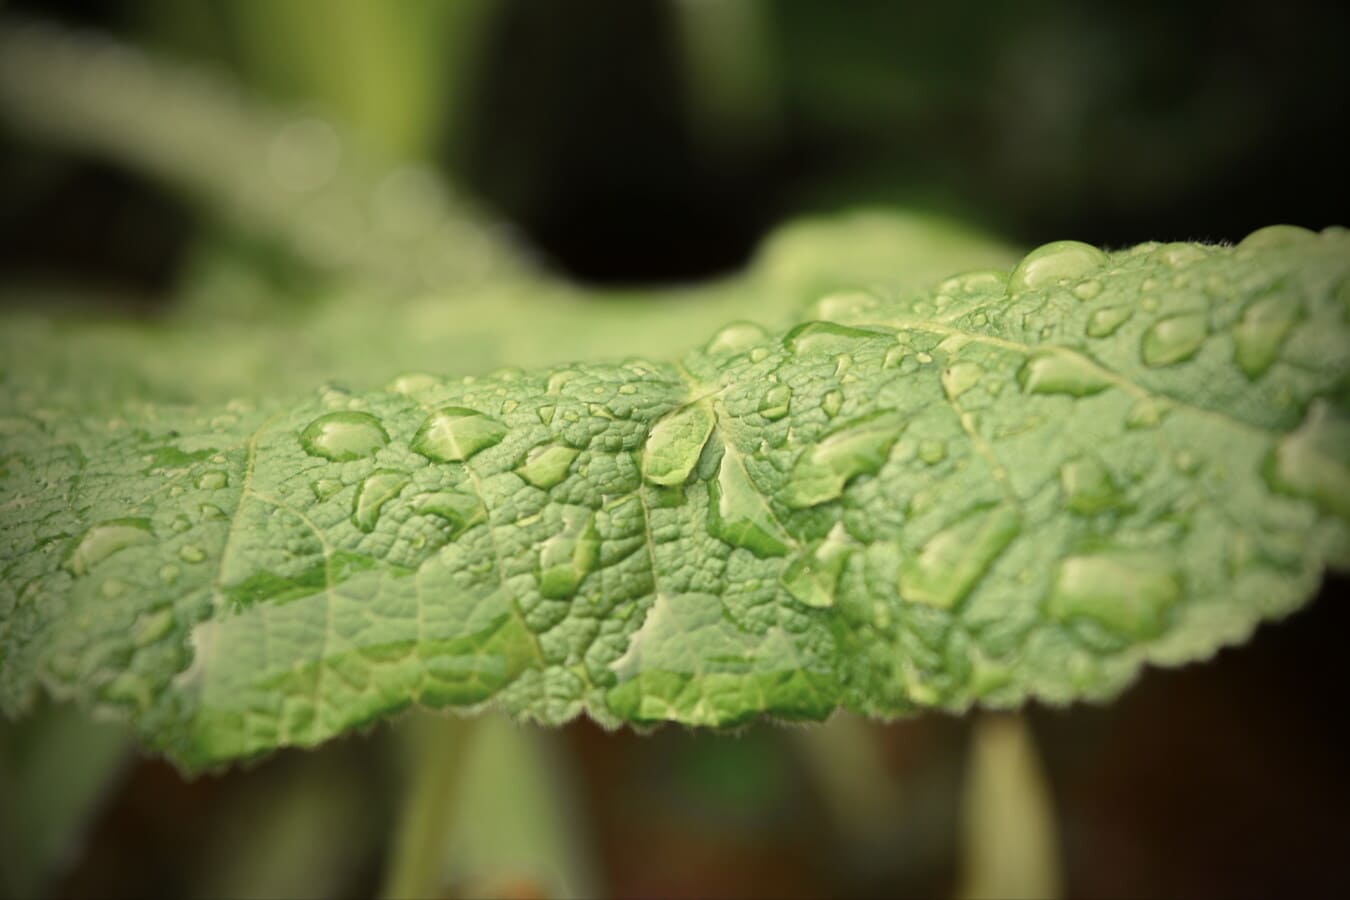 waterdrops, detalii, picătură de ploaie, condens, umiditate, până aproape, frunza verde, roua, plante, frunze